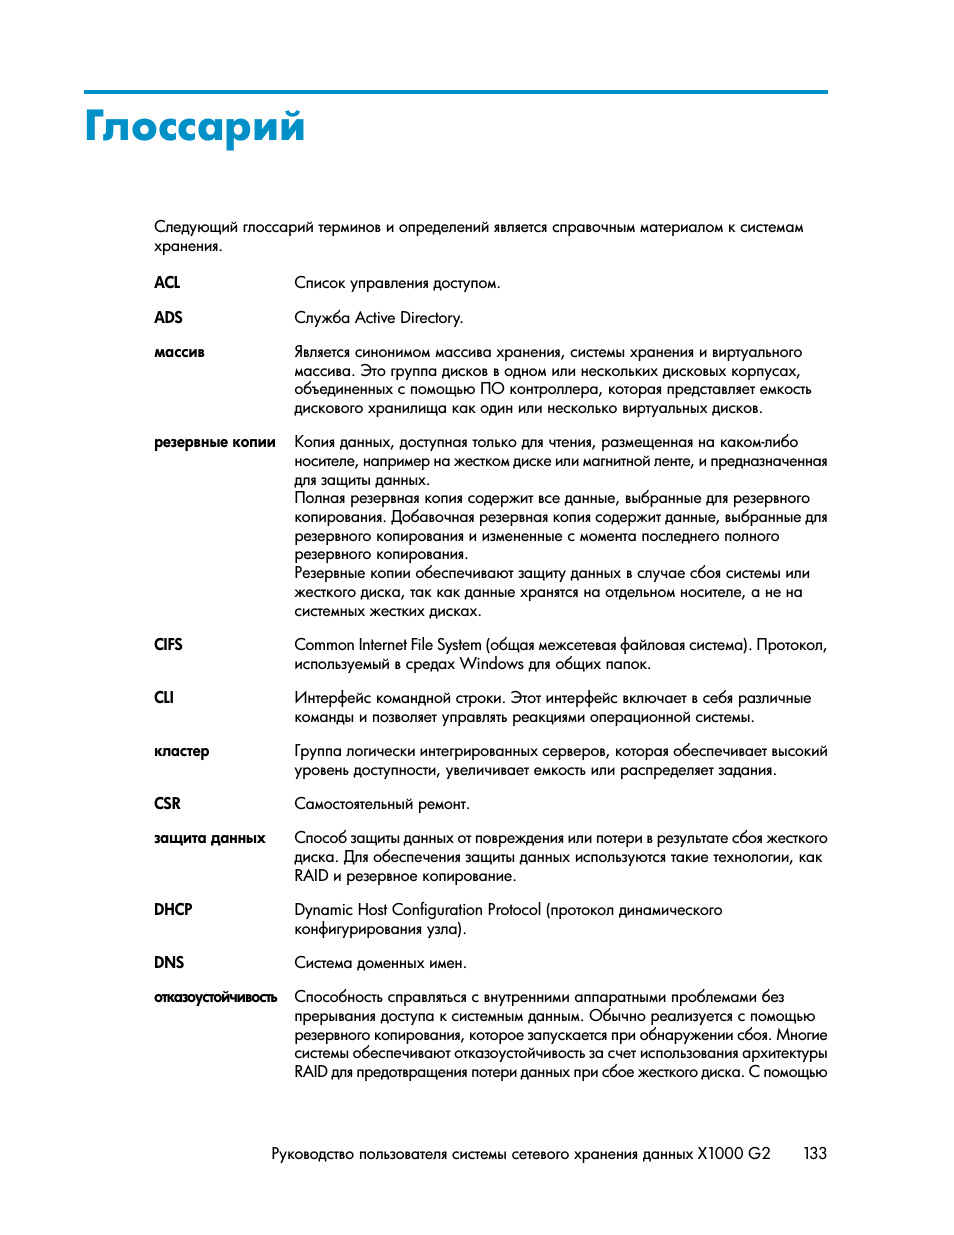 Глоссарий | Инструкция по эксплуатации HP Сетевые системы хранения HP StorageWorks X3000 | Страница 133 / 140